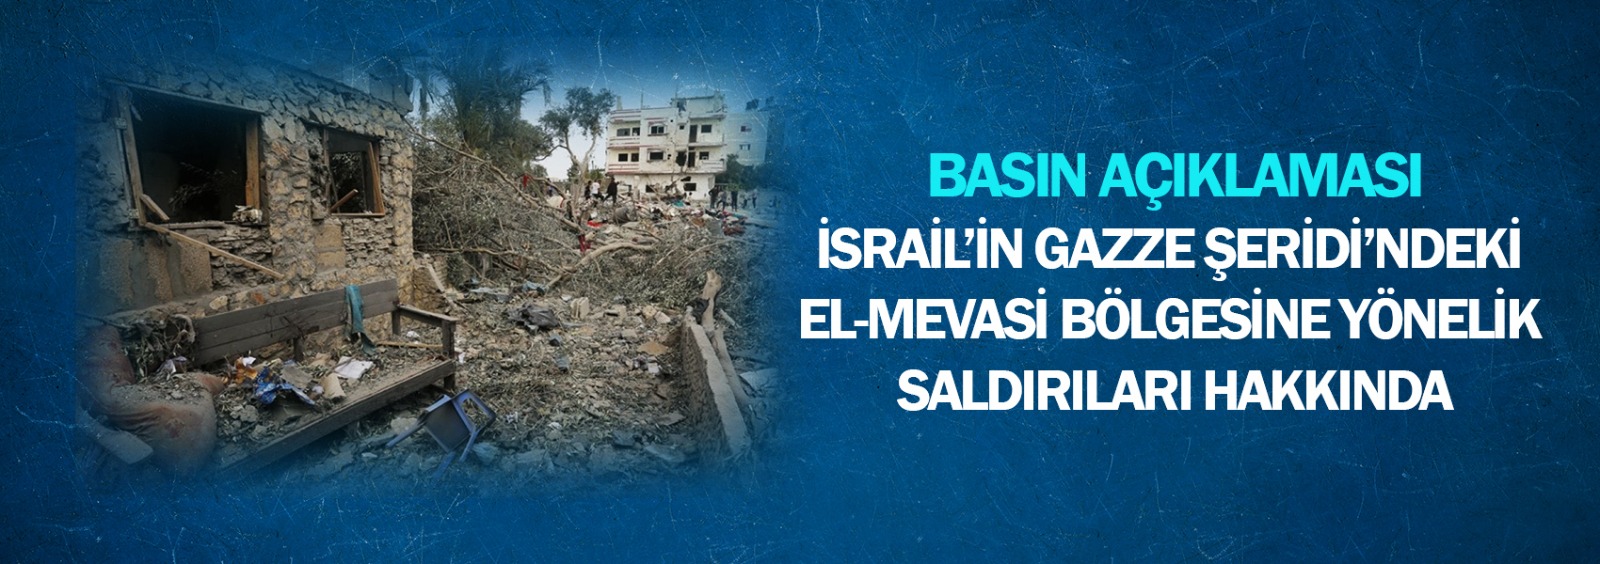 İsrail’in Gazze Şeridi’ndeki El-Mevasi Bölgesine Yönelik Saldırıları Hakkında Basın Açıklaması